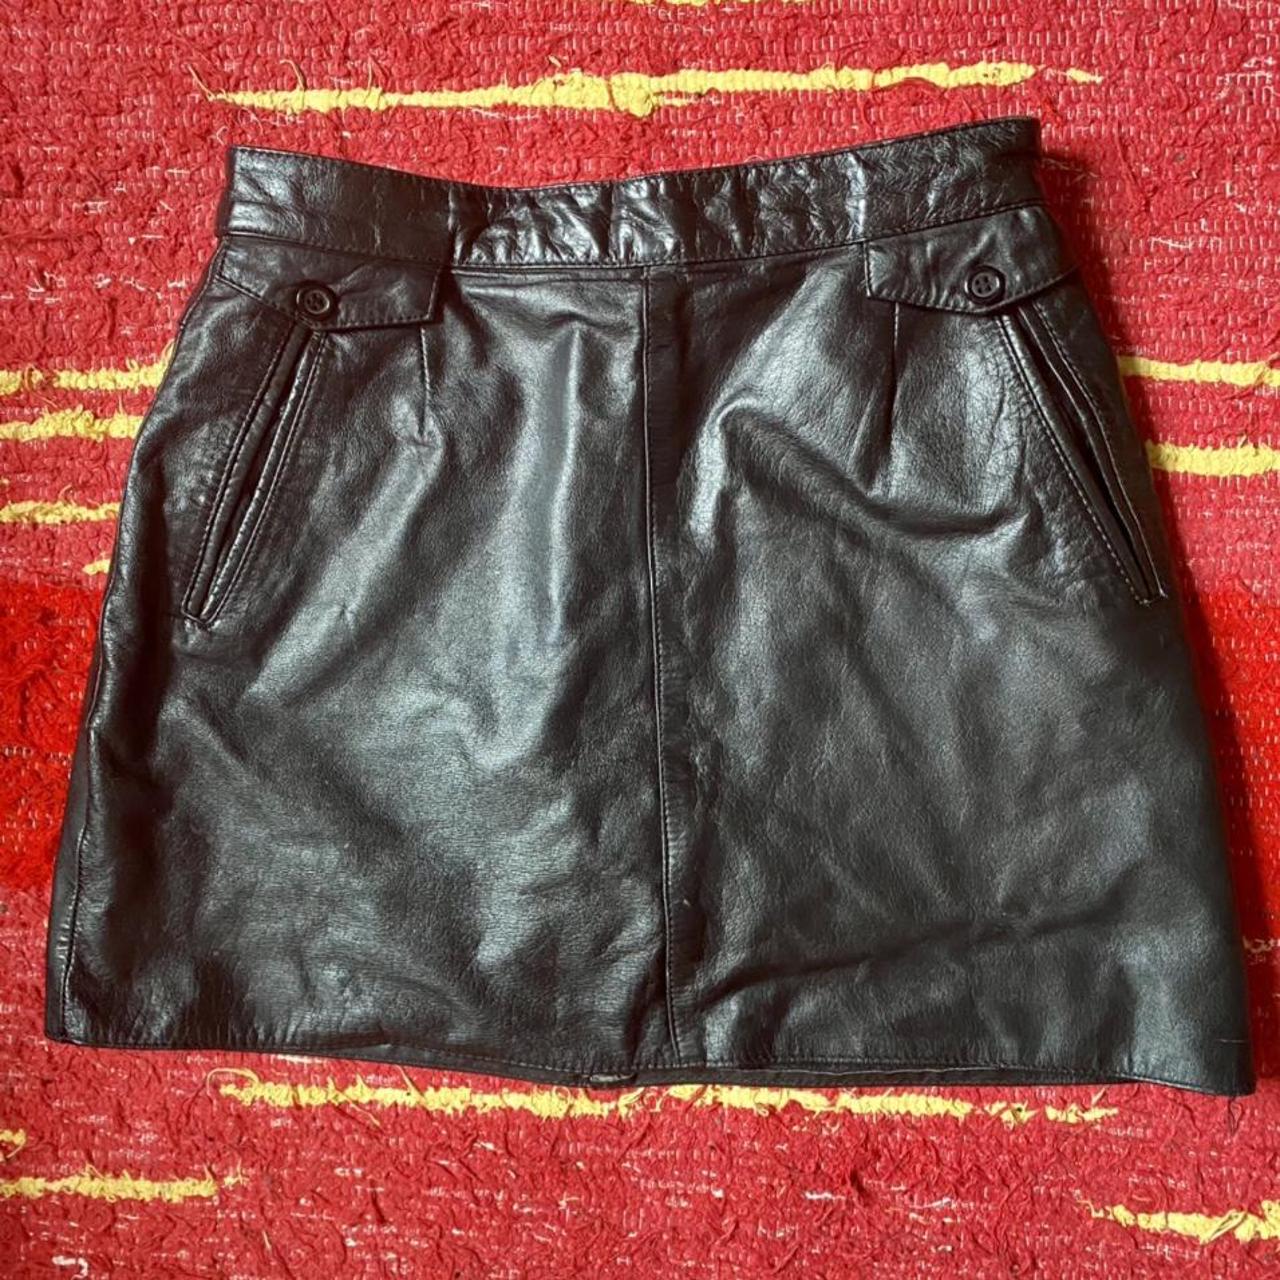 Sick vintage 100% genuine leather mini... - Depop